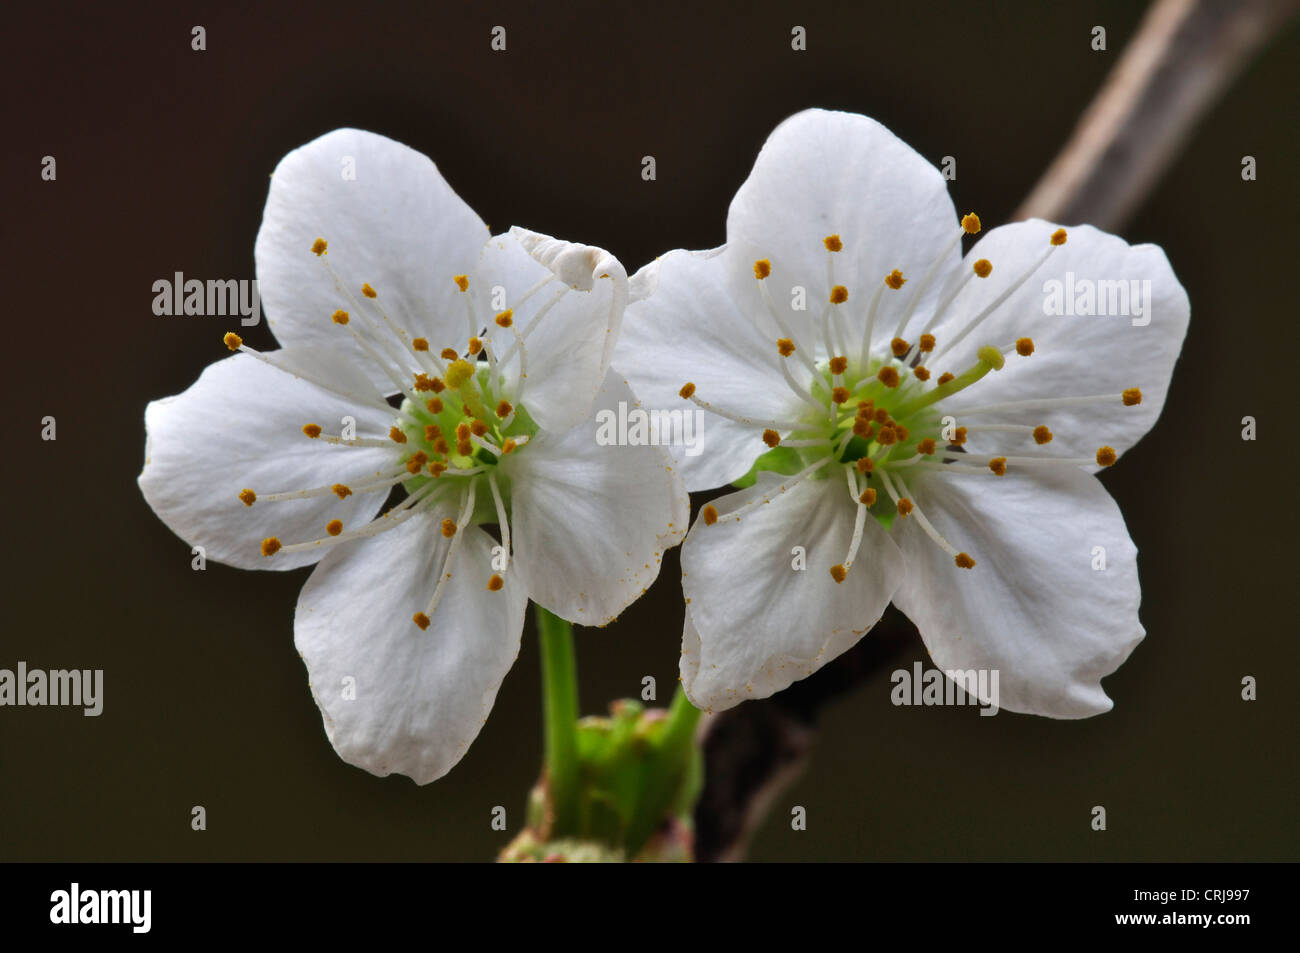 wild cherry prunus avium blossom Stock Photo